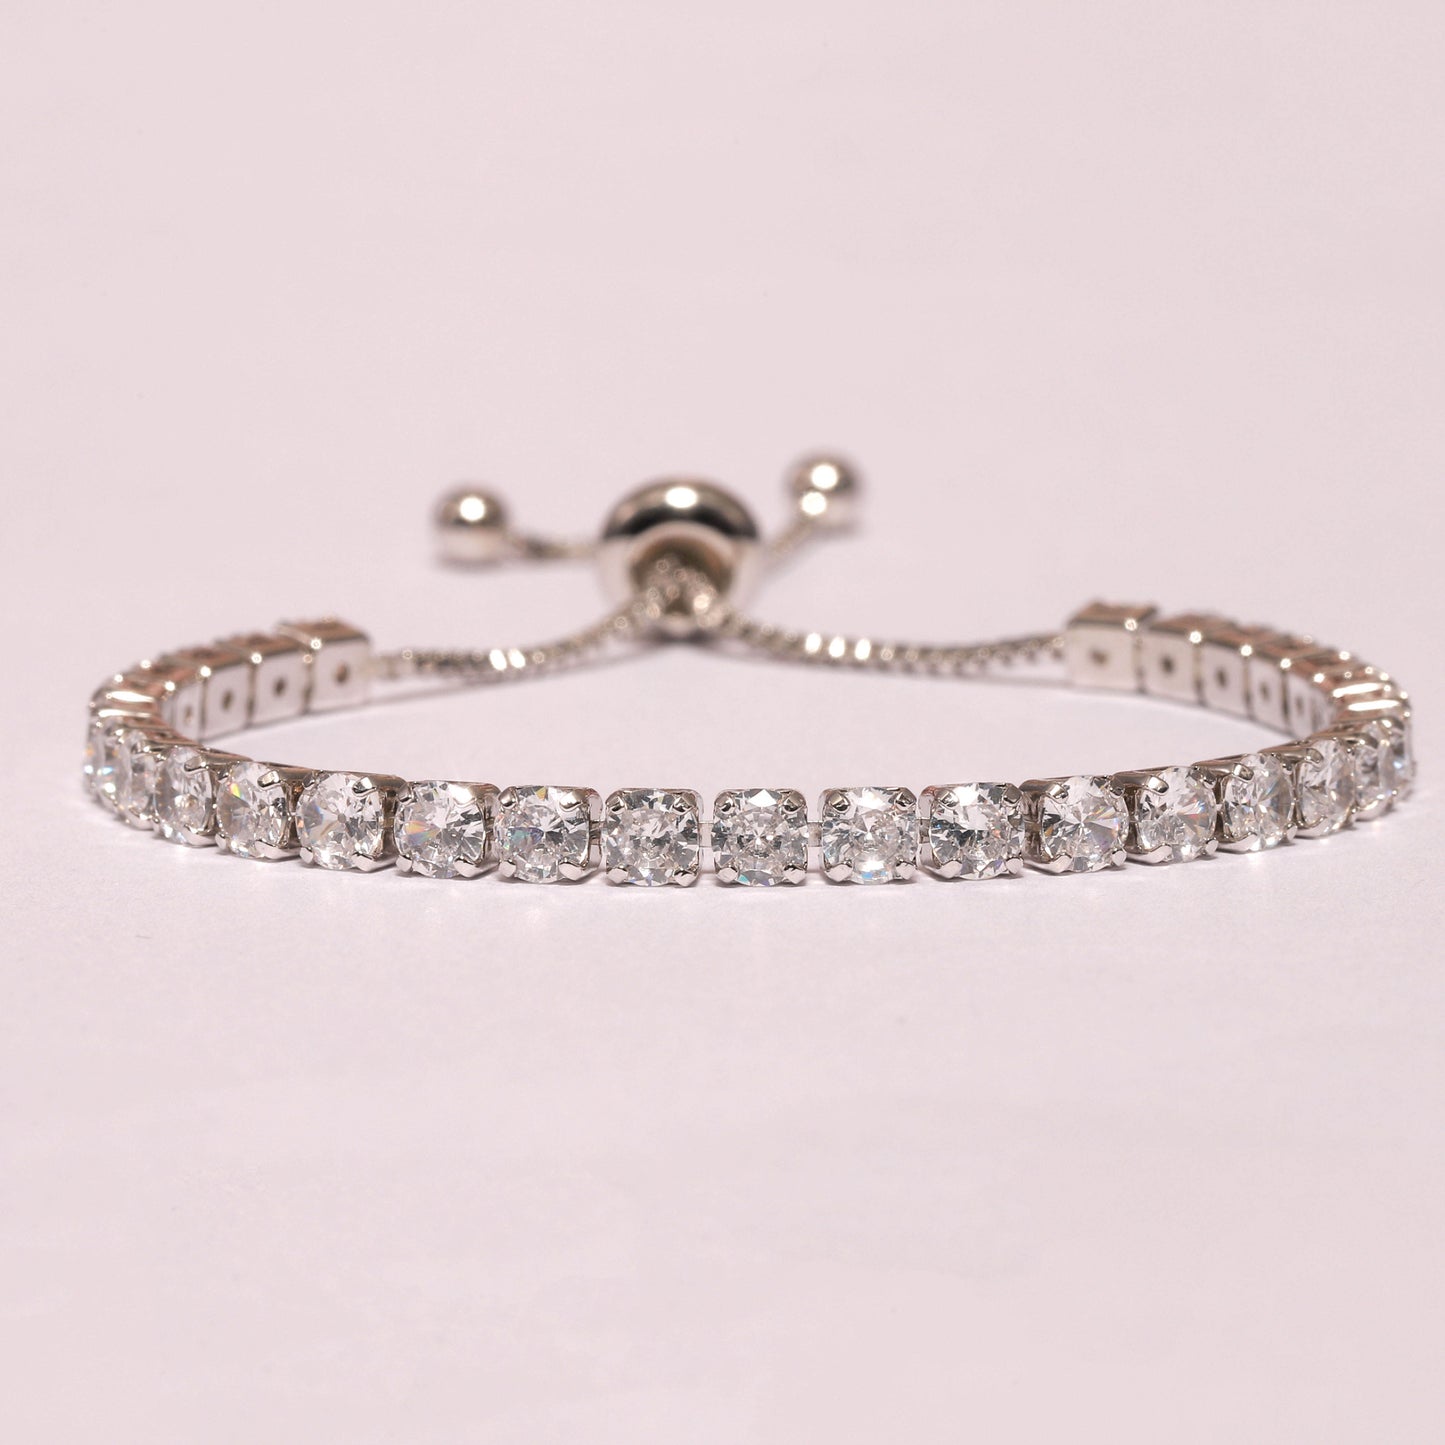 Glistening Glider bracelet- Rhodium plated with white crystals